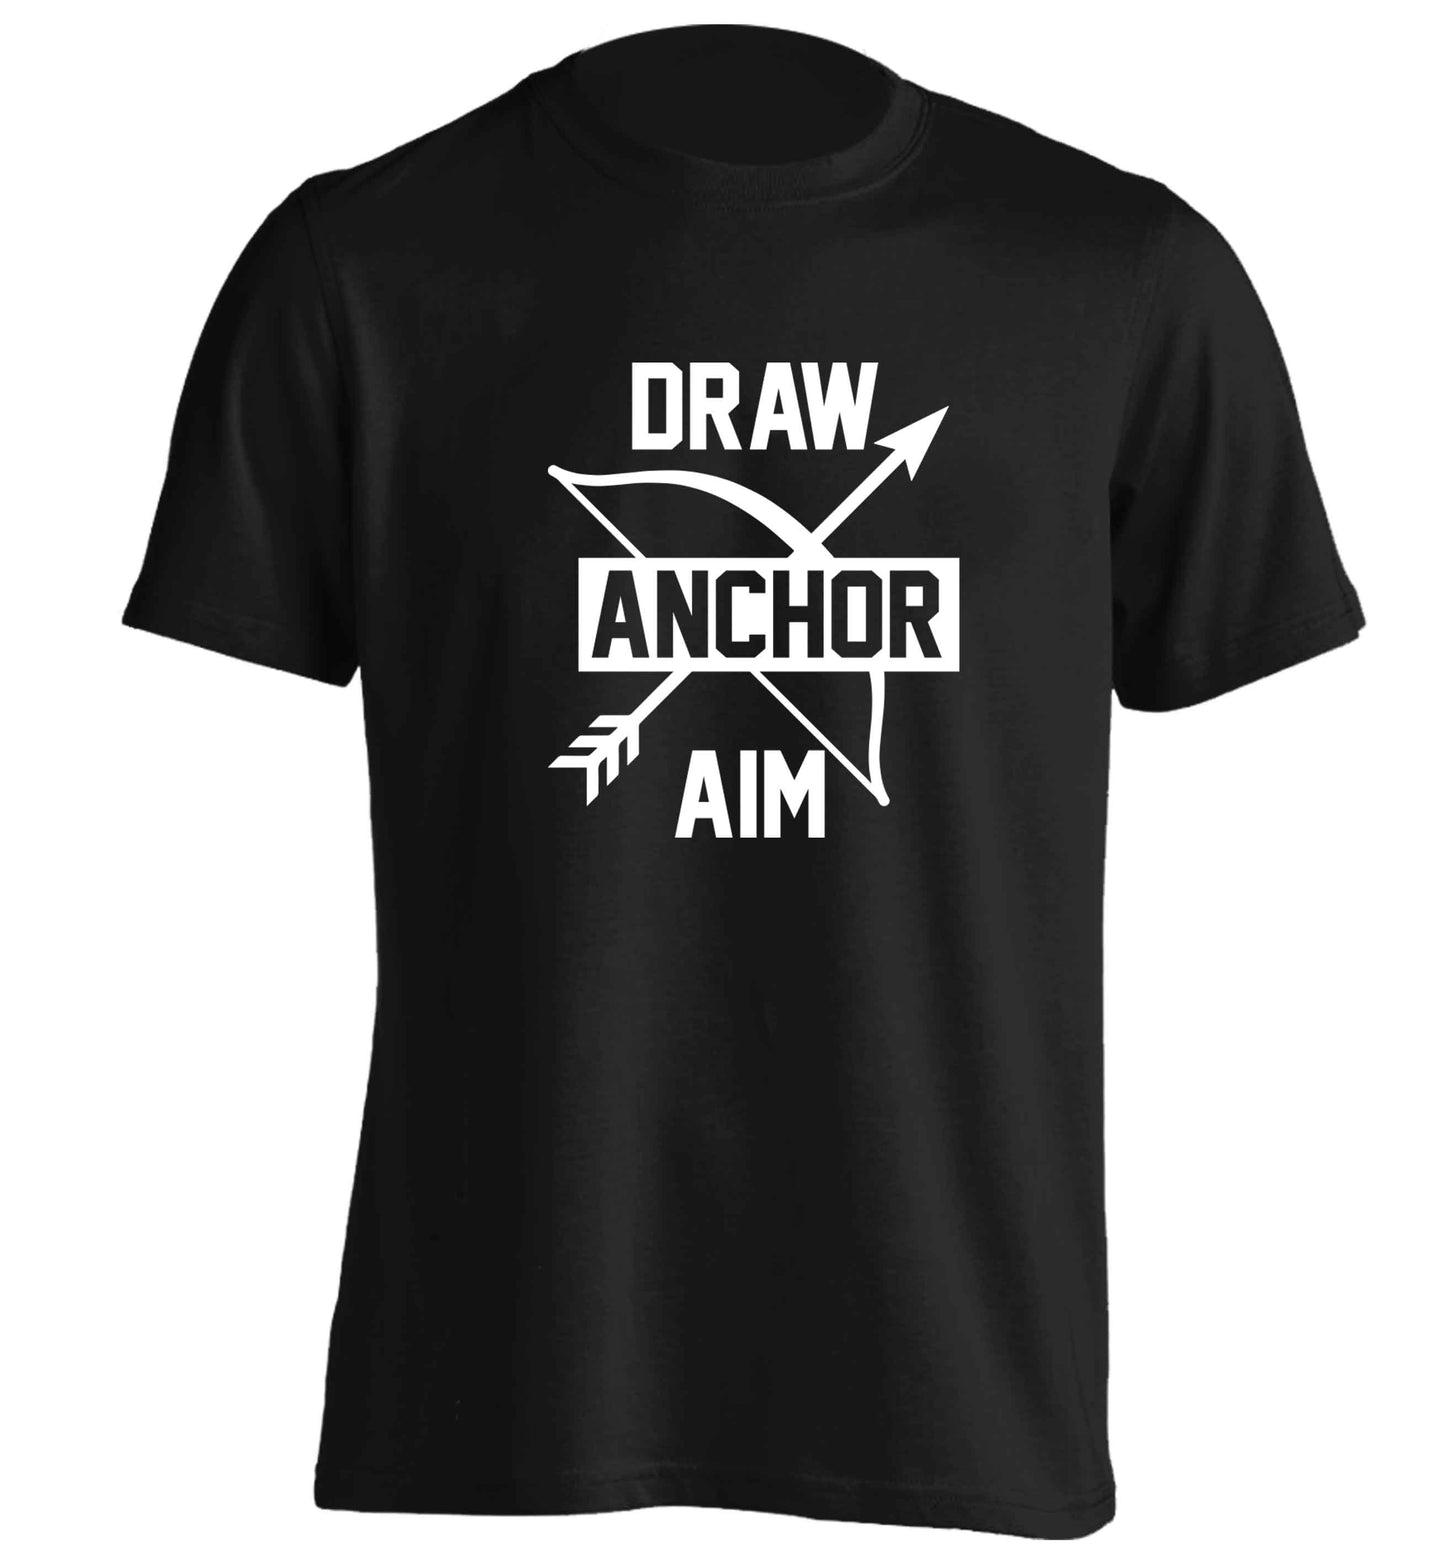 Draw anchor aim adults unisex black Tshirt 2XL